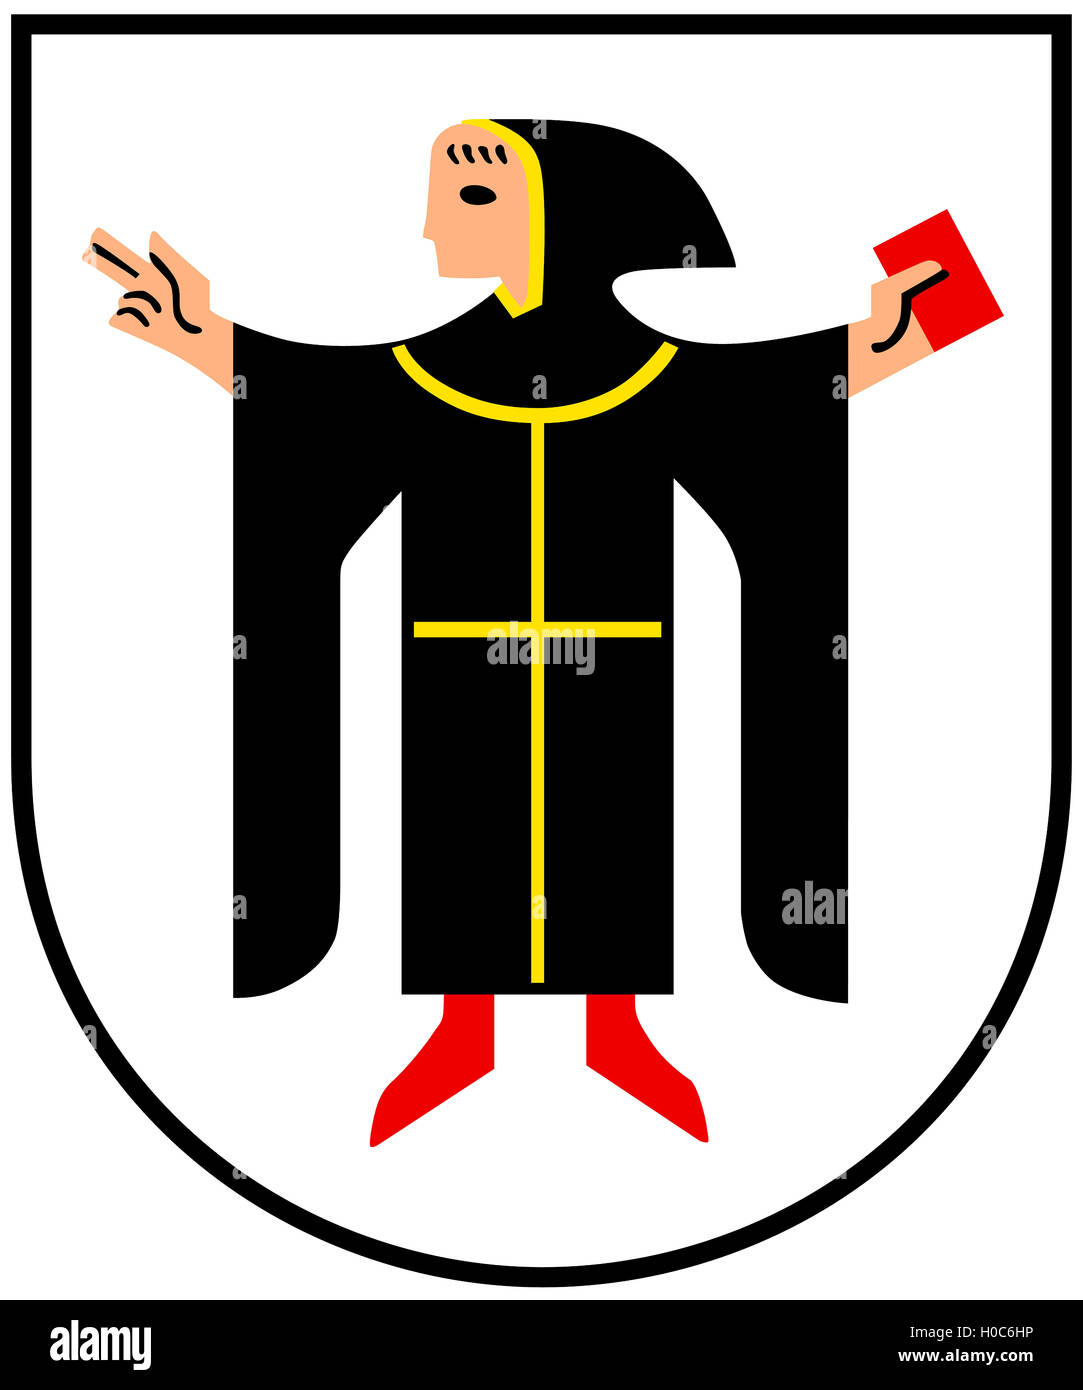 Wappen von der bayerischen Landeshauptstadt München in Deutschland. Stockfoto